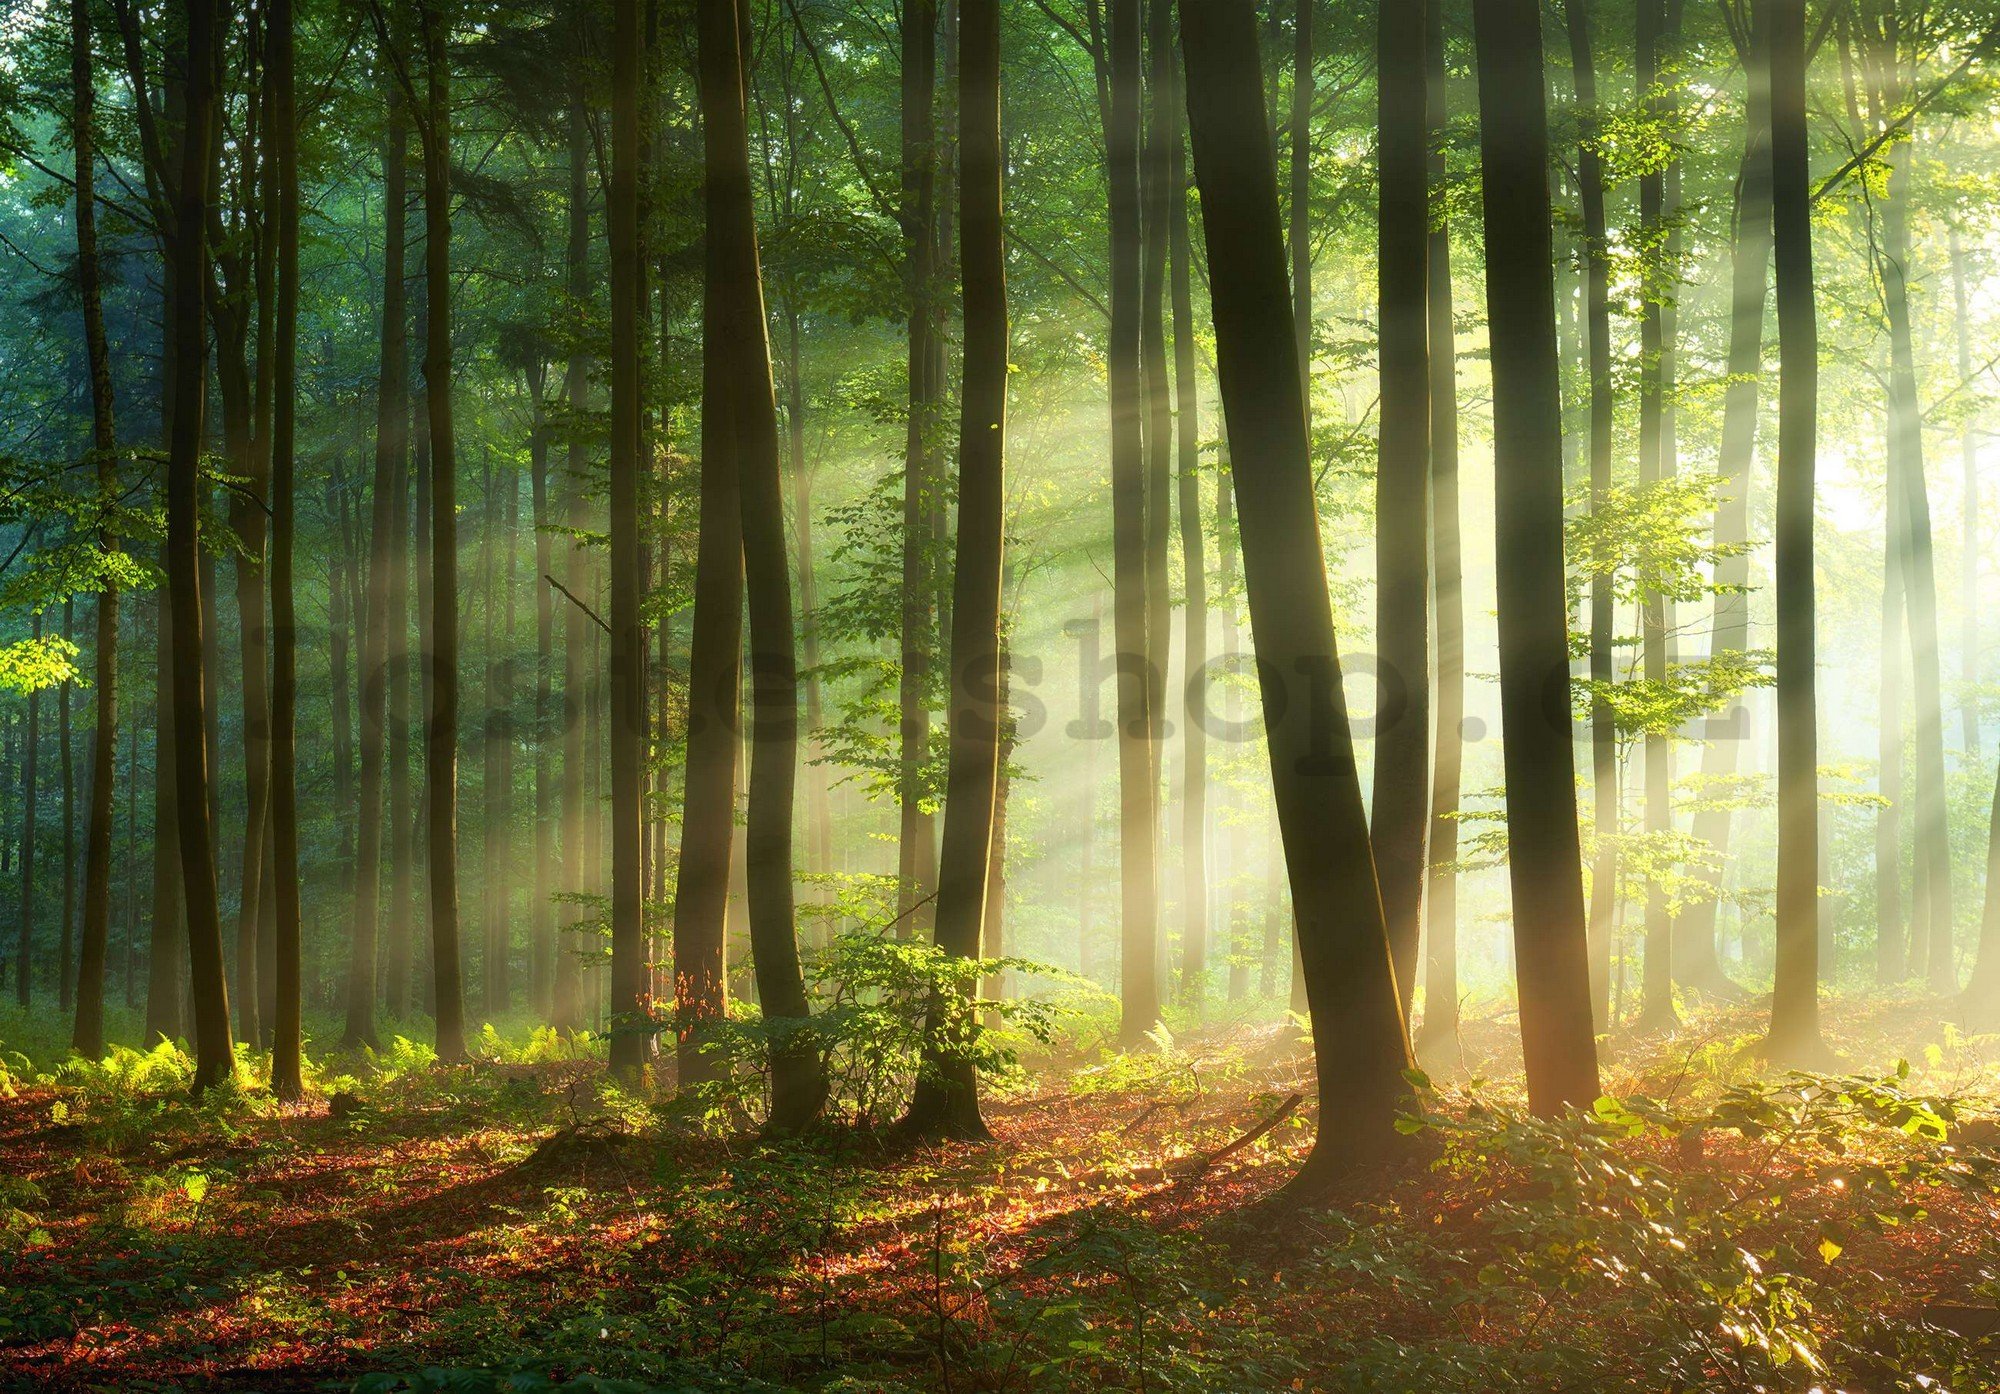 Fototapeta vliesová: Východ slunce v lese - 416x254 cm